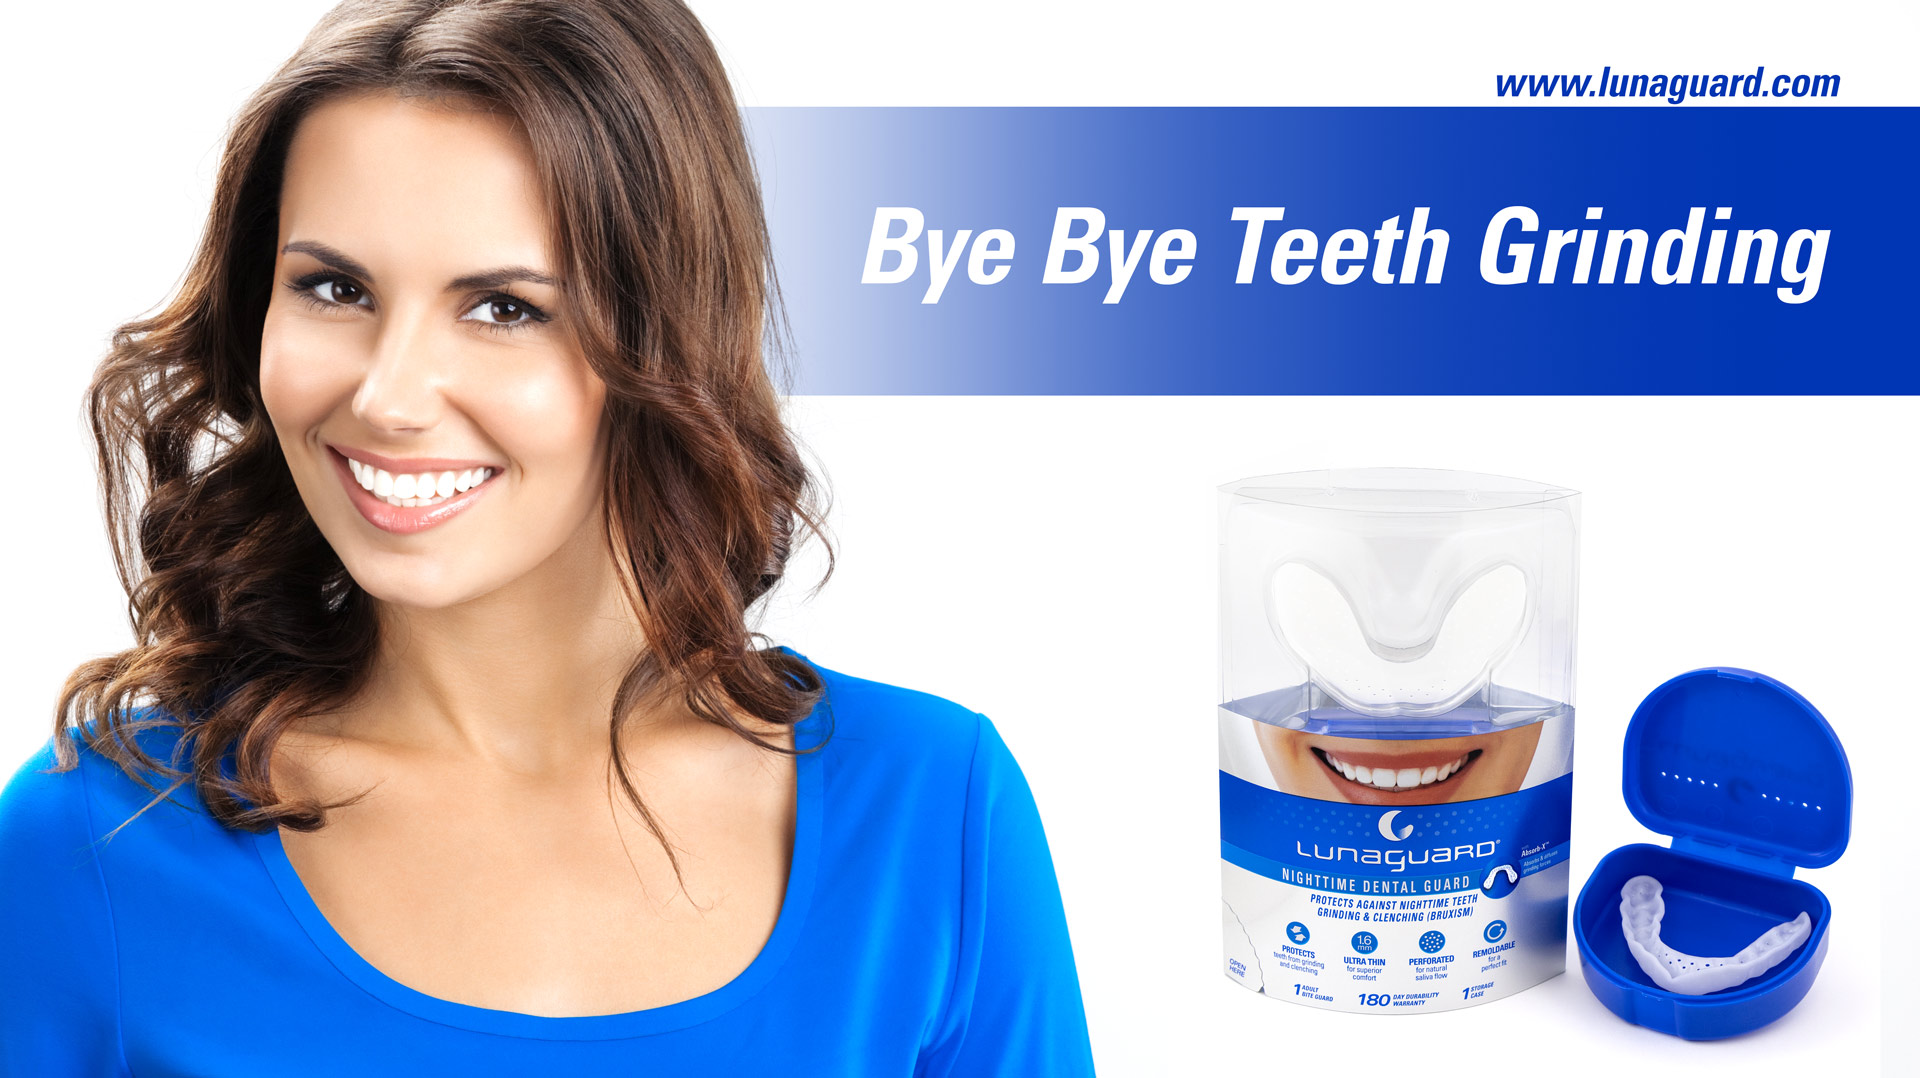 Bye-Bye-Teeth-Grinding-Luna-Dental-Guard